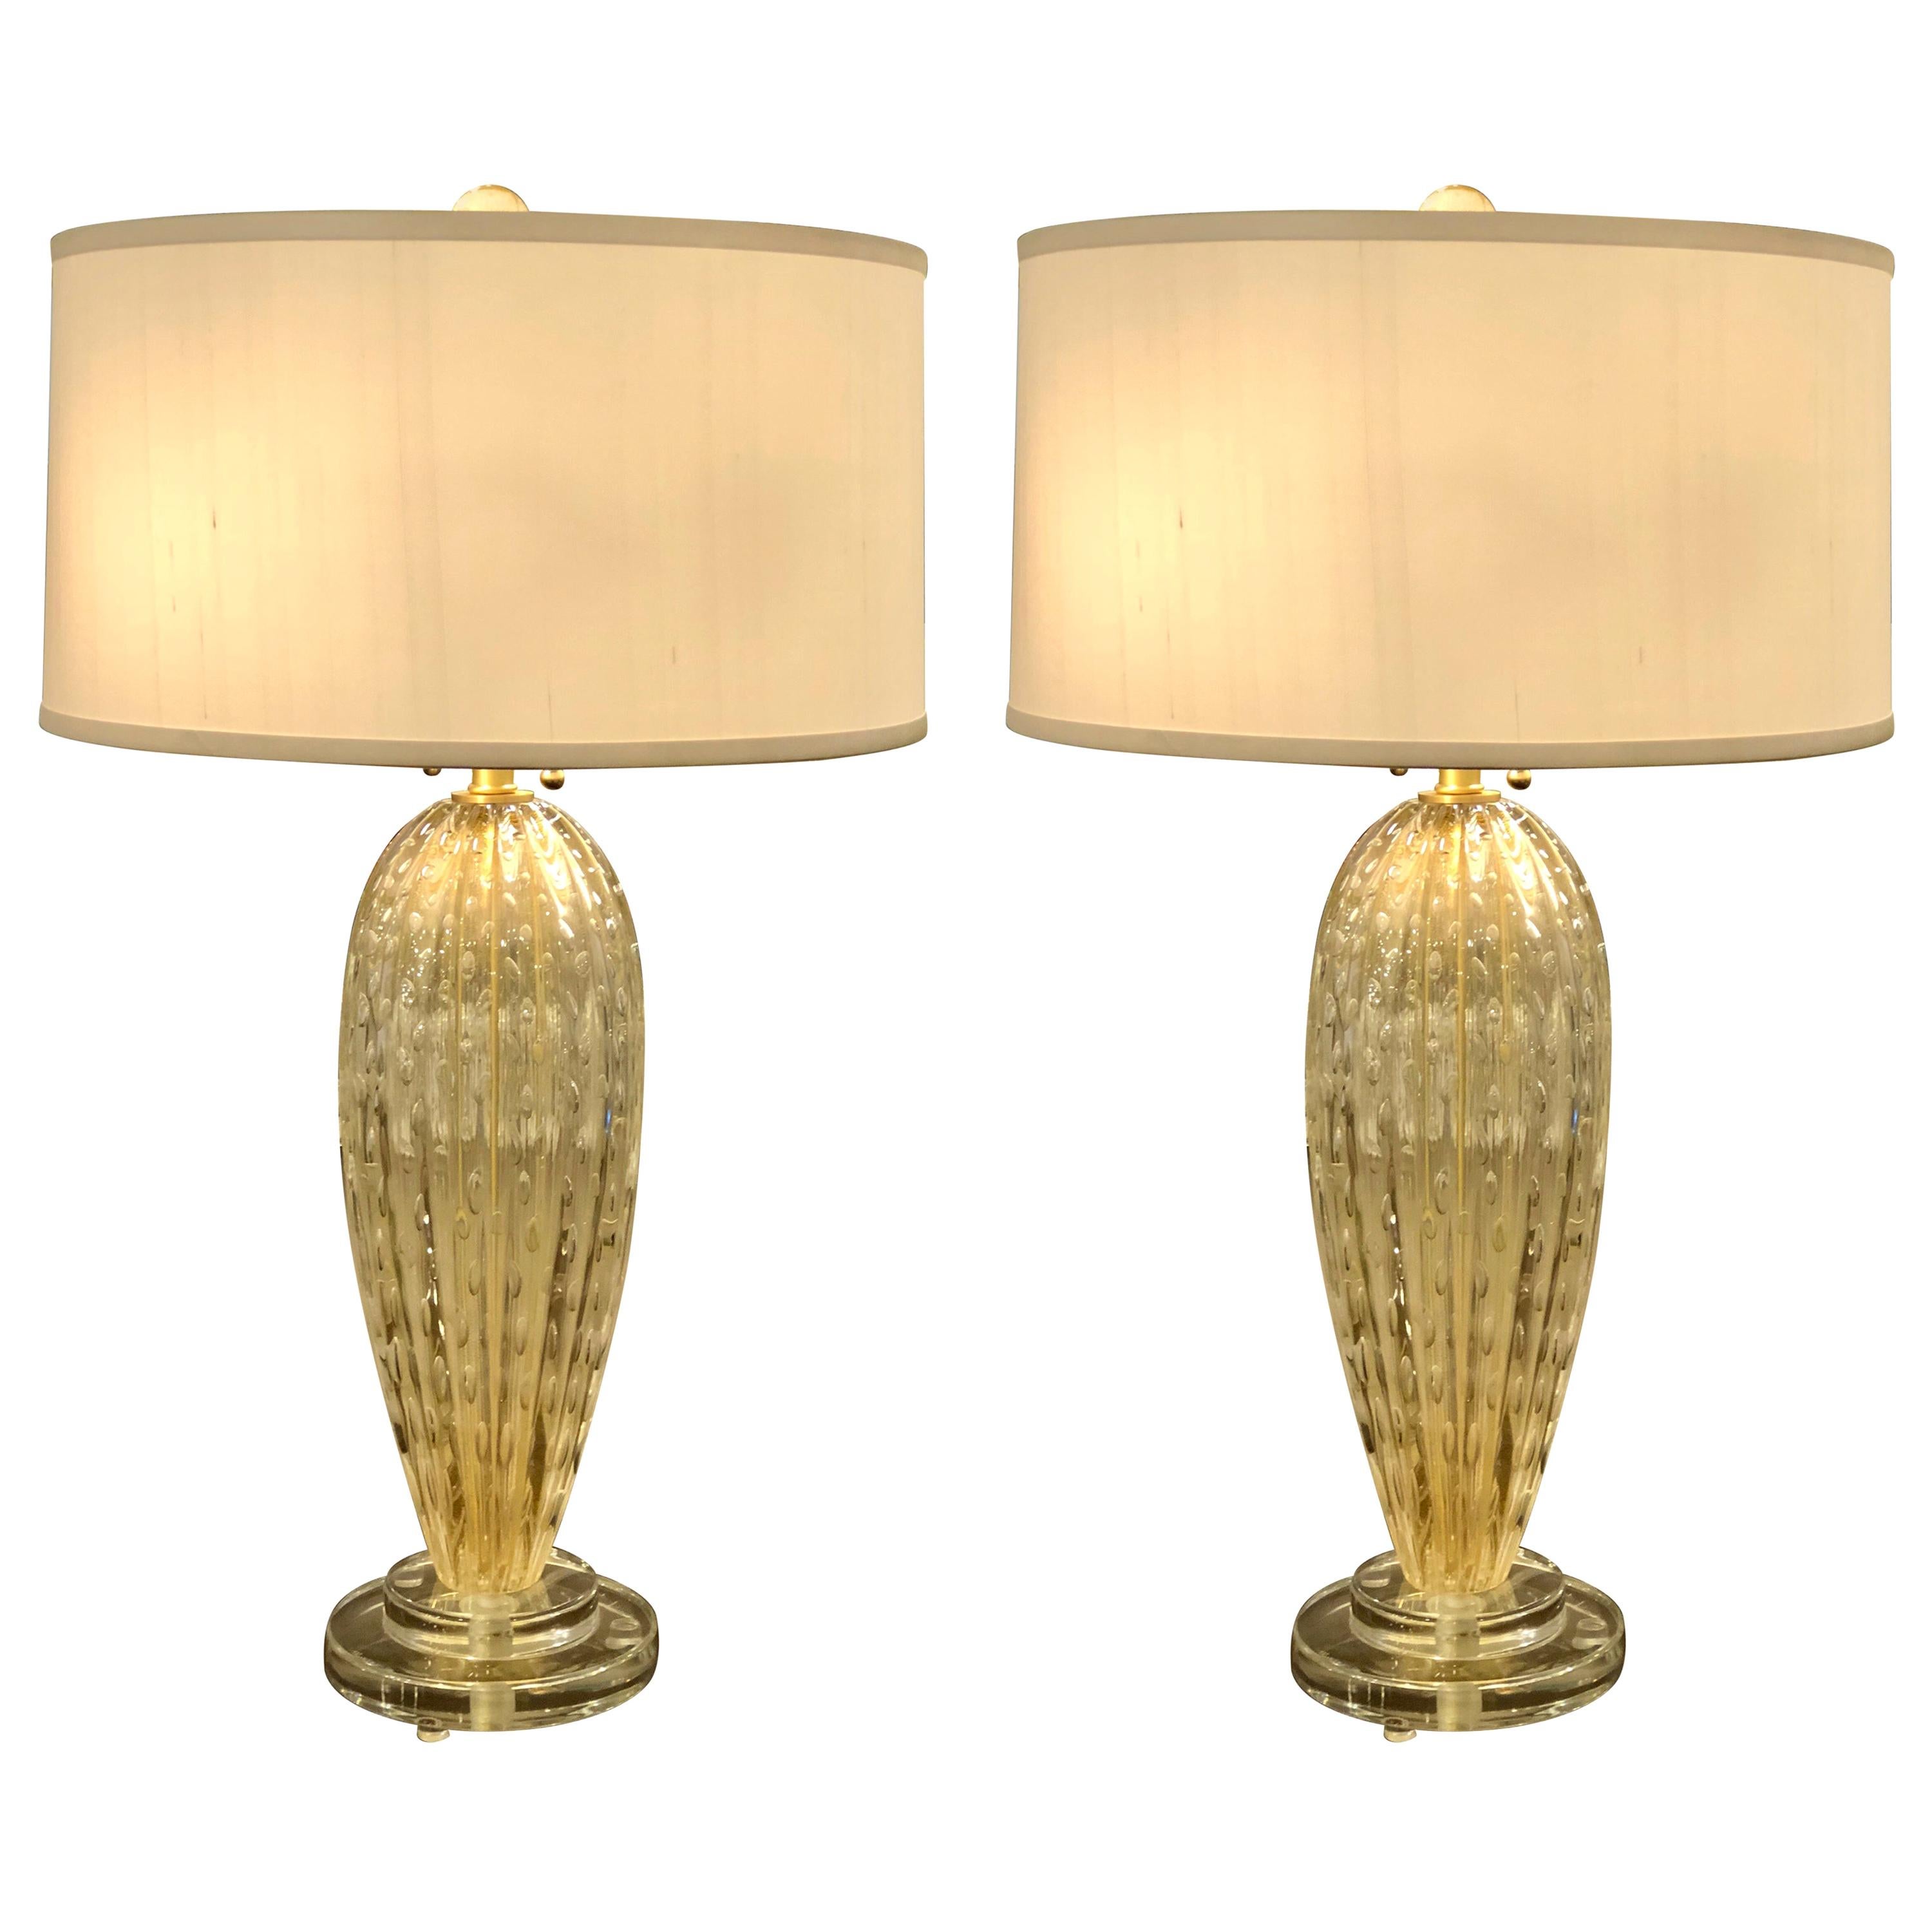 Paire de lampes de table italiennes en verre vnitien et de Murano, transparentes et dores, style Midcentury